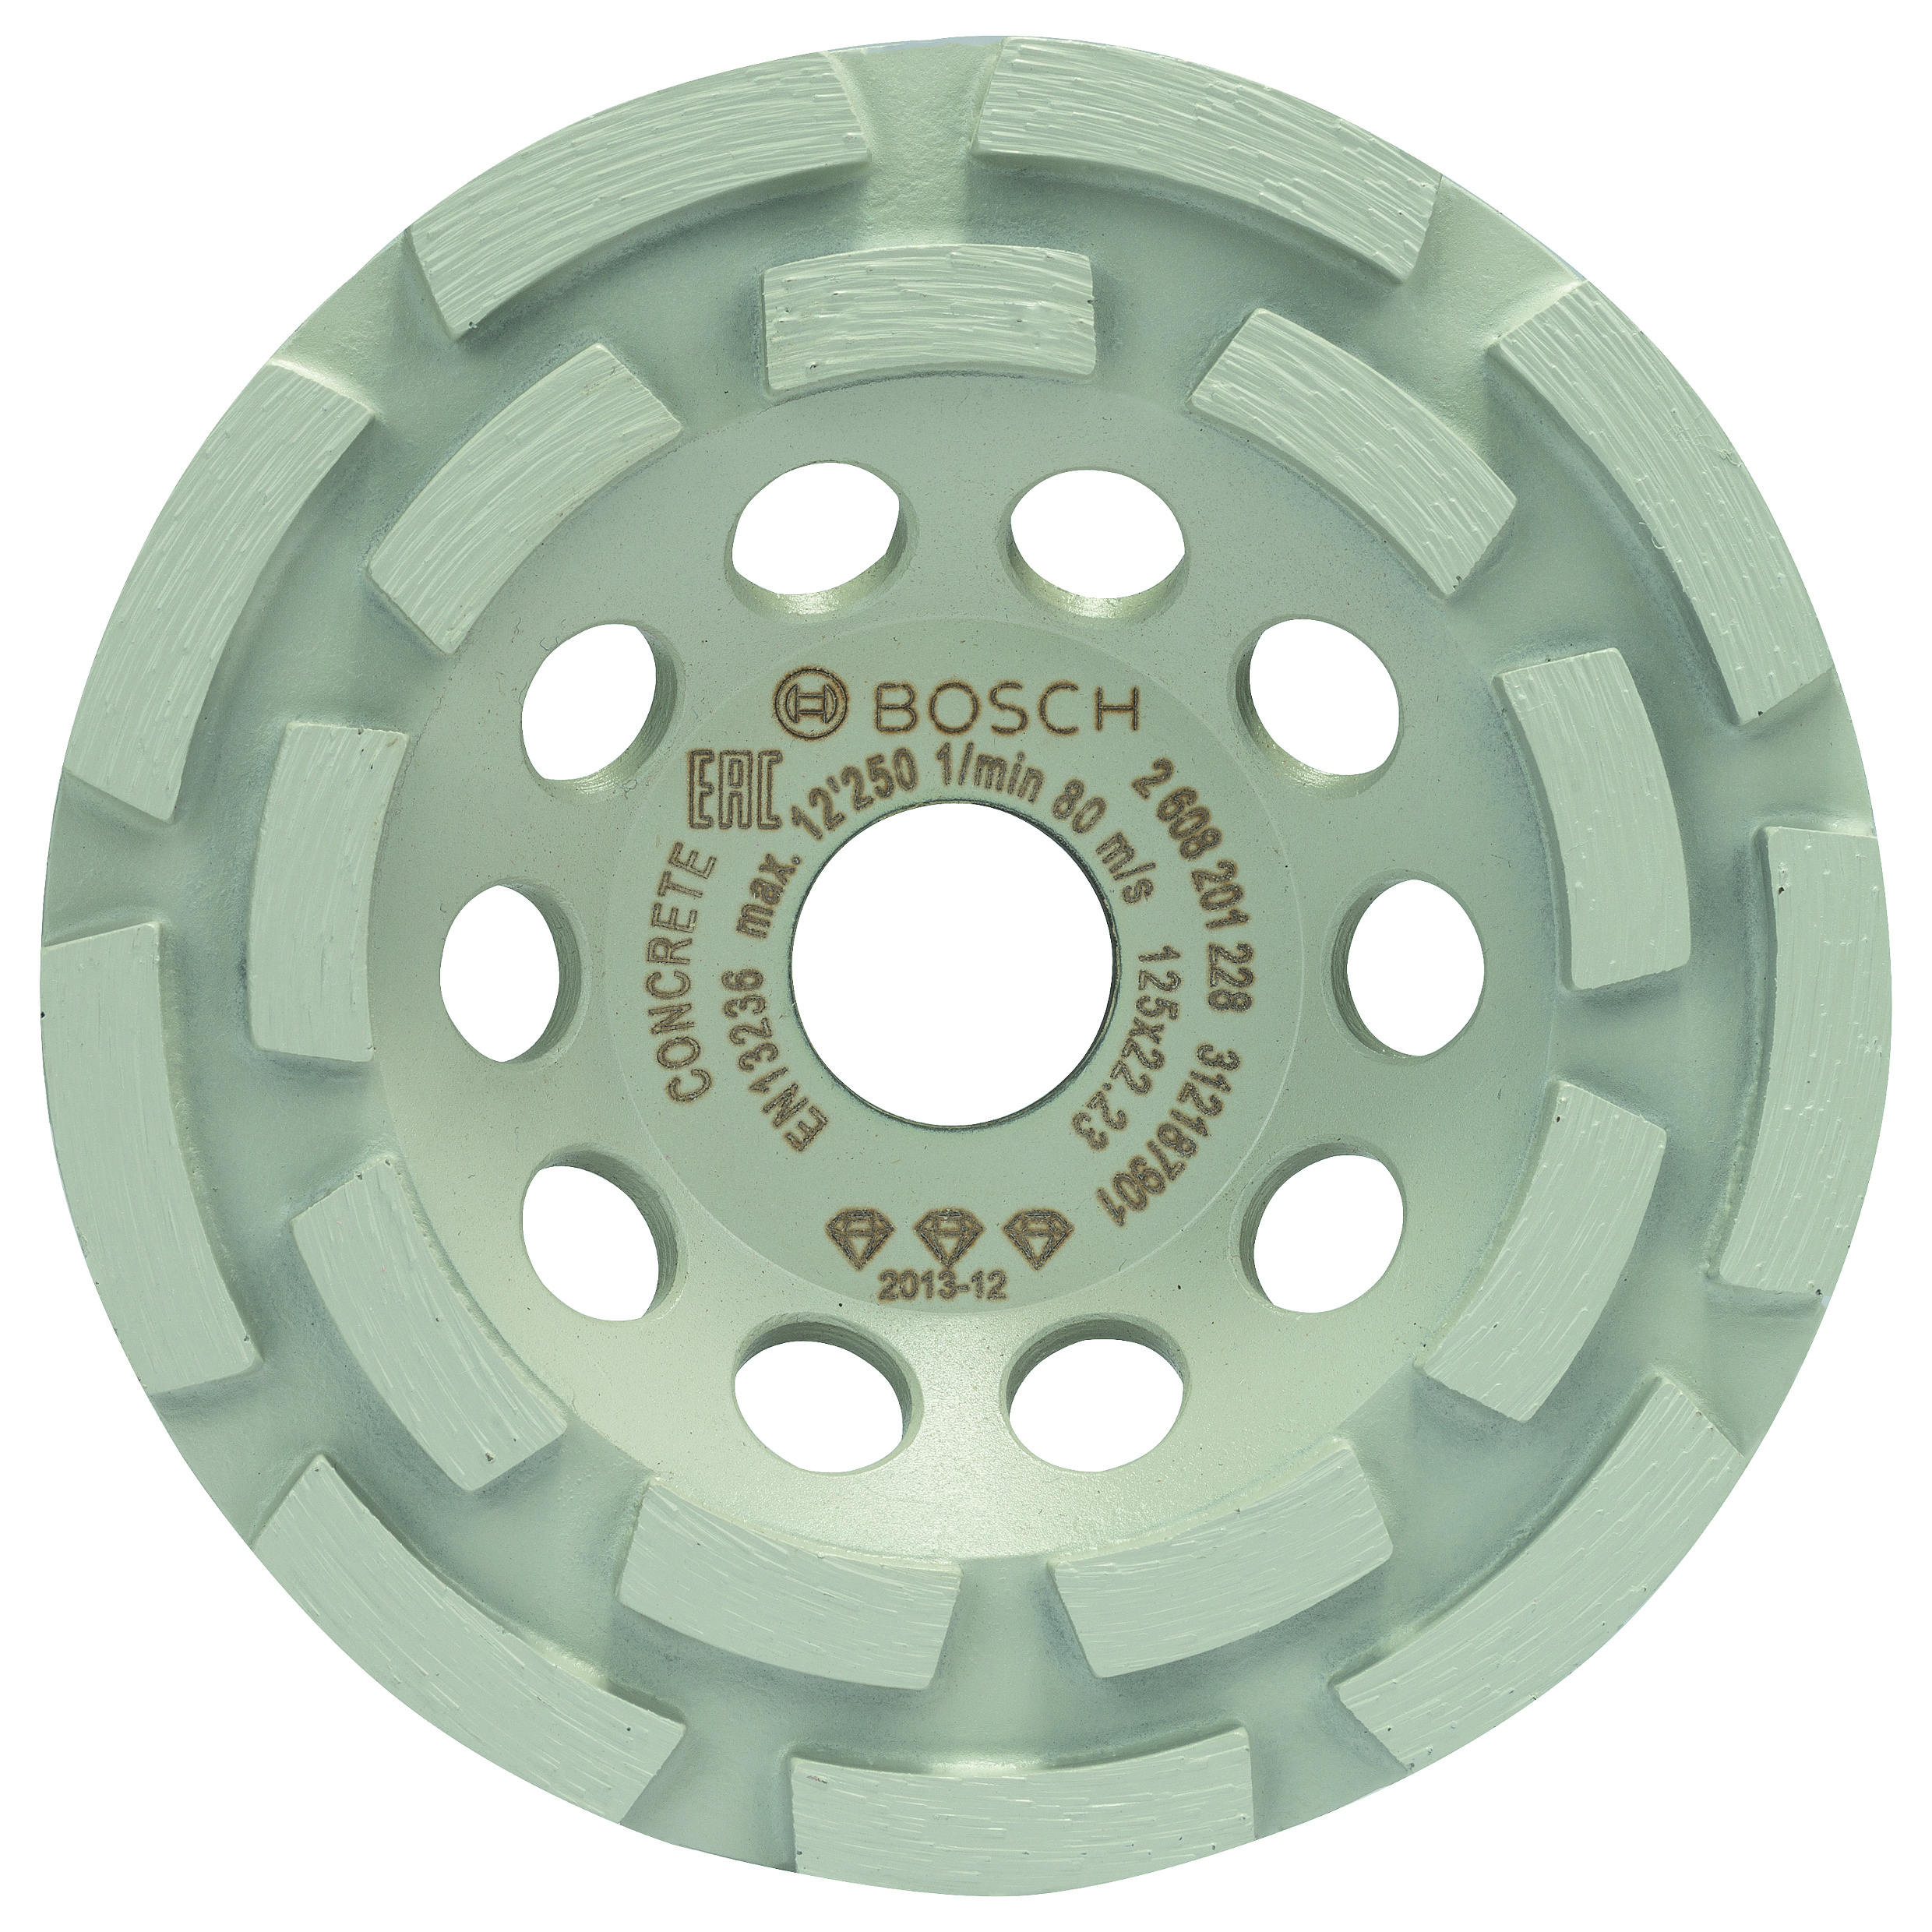 Bosch Diamanttopfscheibe Standard for Concrete 125 x 22,23 x 5 mm 2608601573 